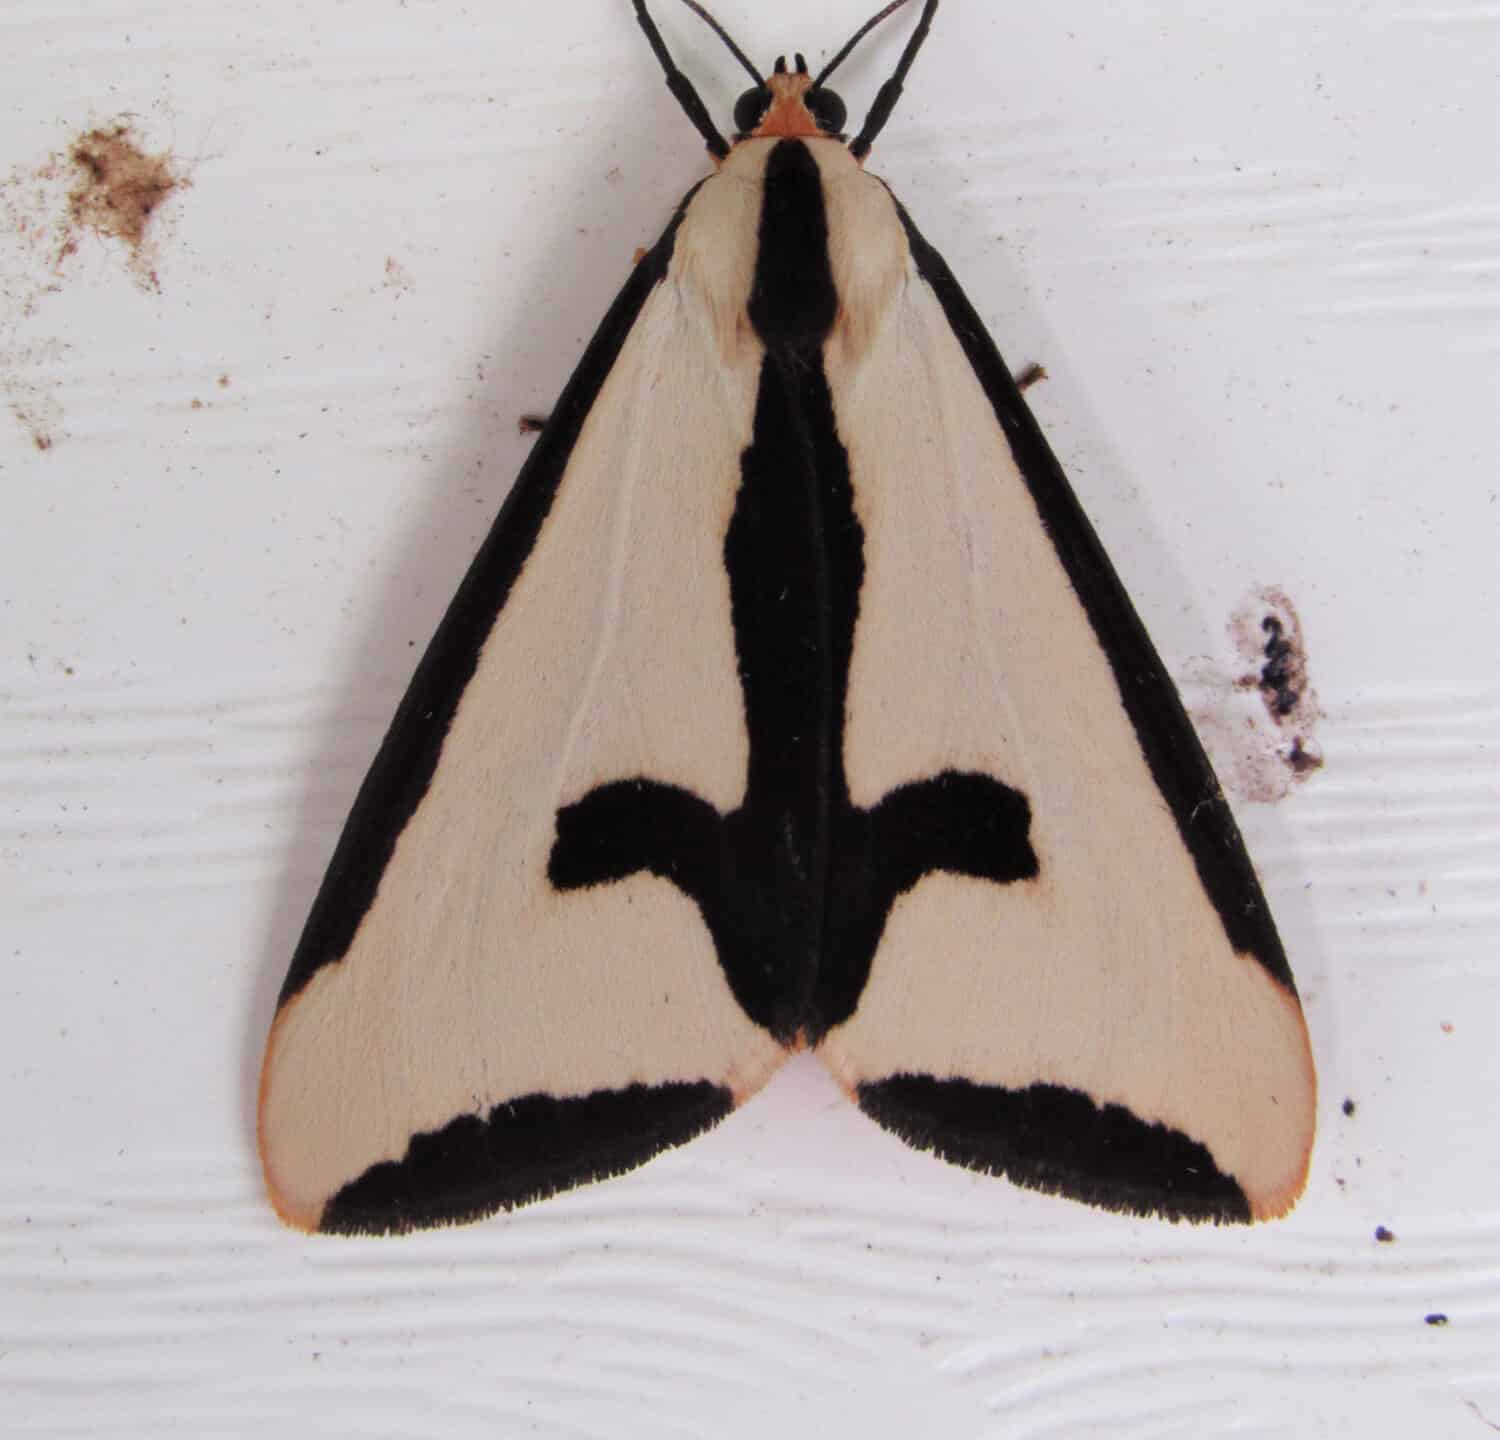 Closeup of a haploa clymene moth on the side of a house 